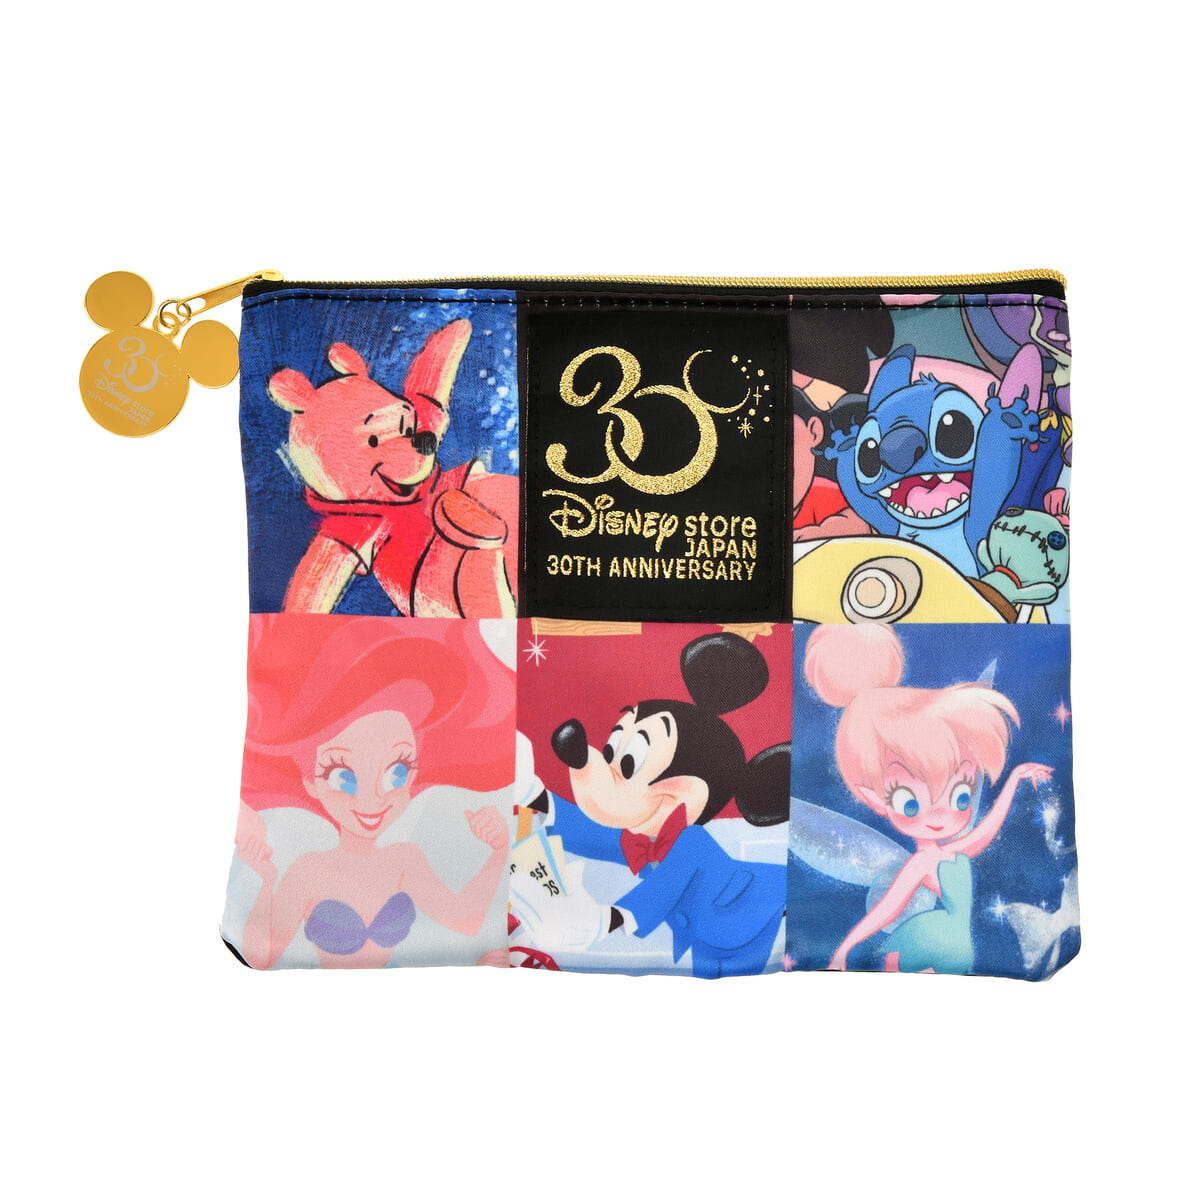 ディズニーキャラクター ポーチ フラット Disney Store Japan 30th Anniversary